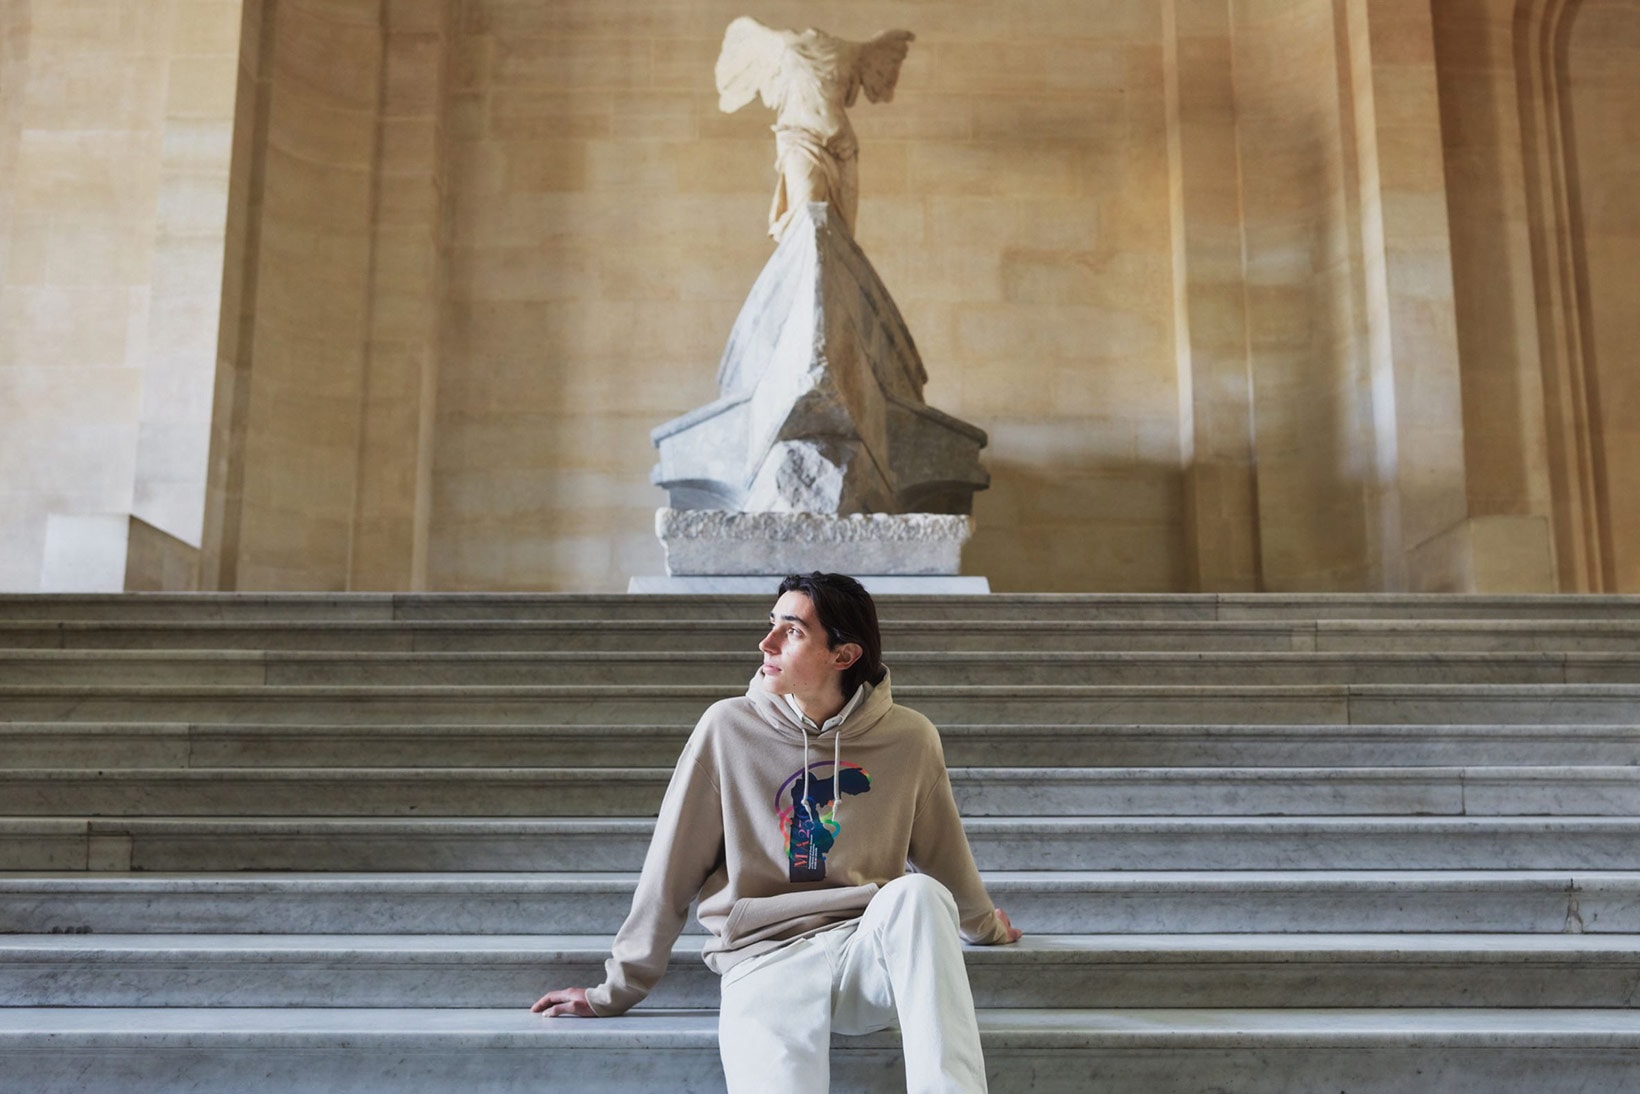 uniqlo ut musee du louvre paris collaboration campaign art sculpture hoodie beige white pants